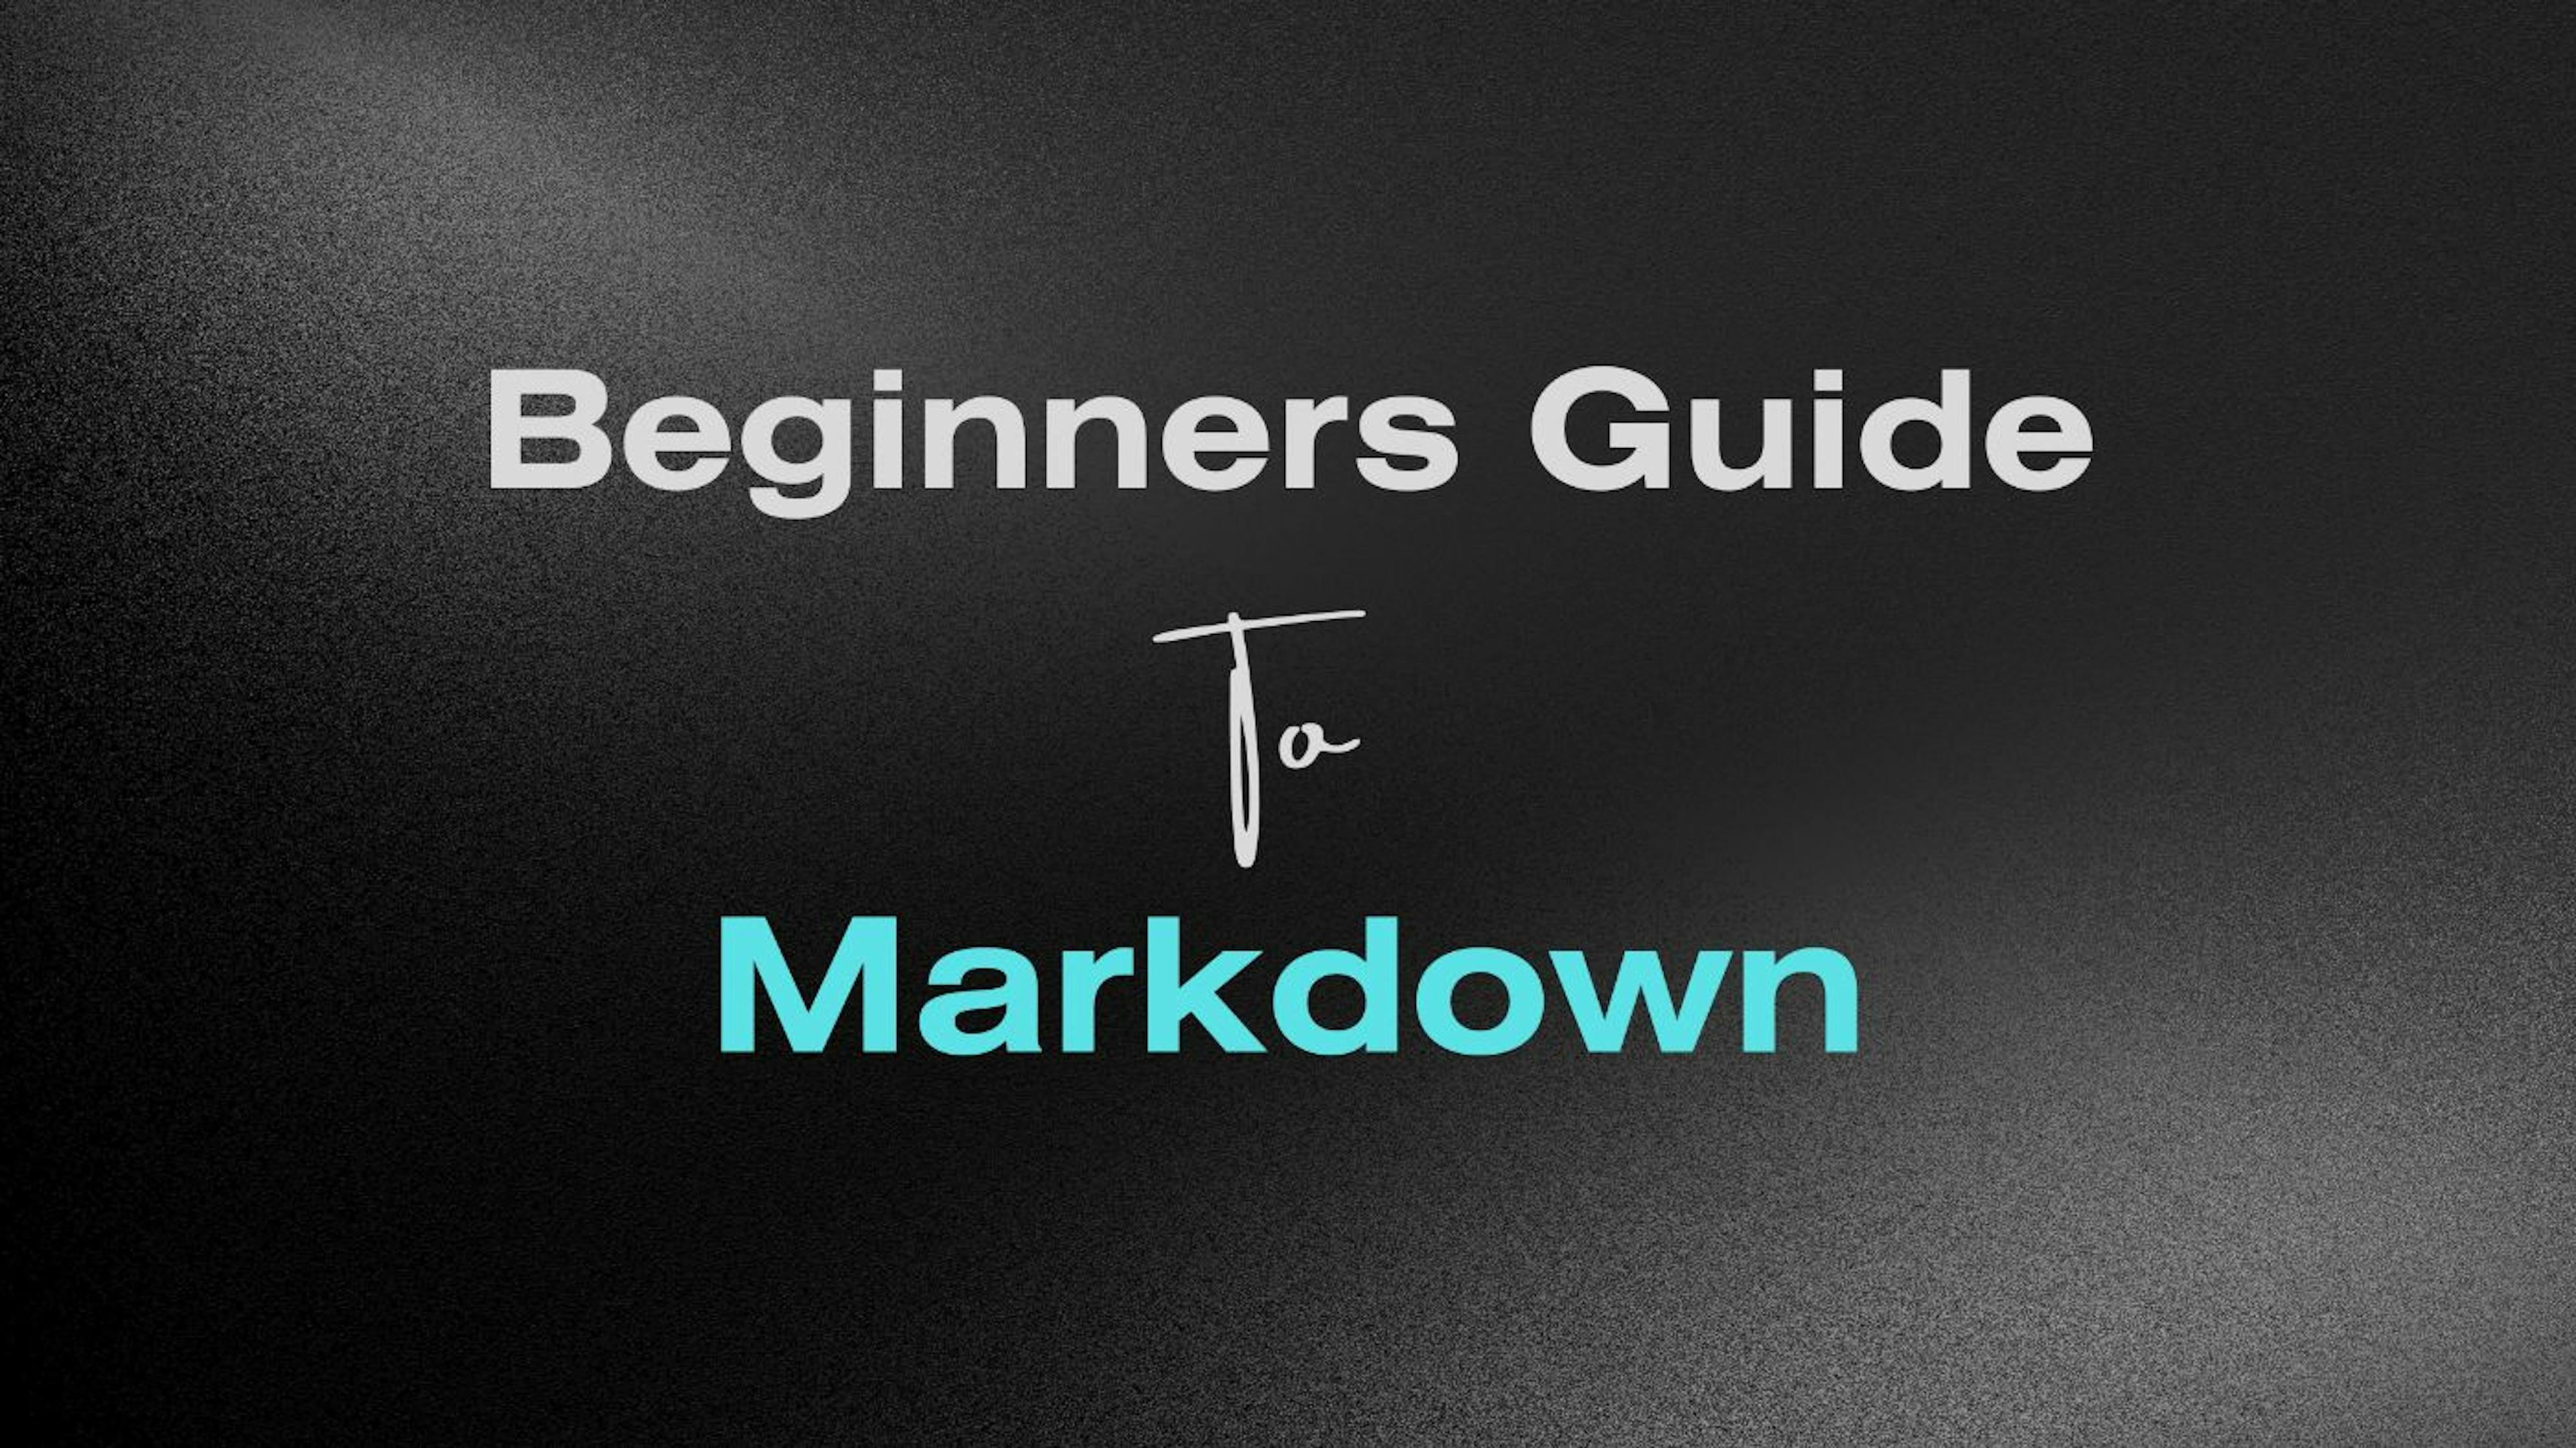 featured image - Una guía para principiantes sobre Markdown: todo lo que necesita saber para comenzar